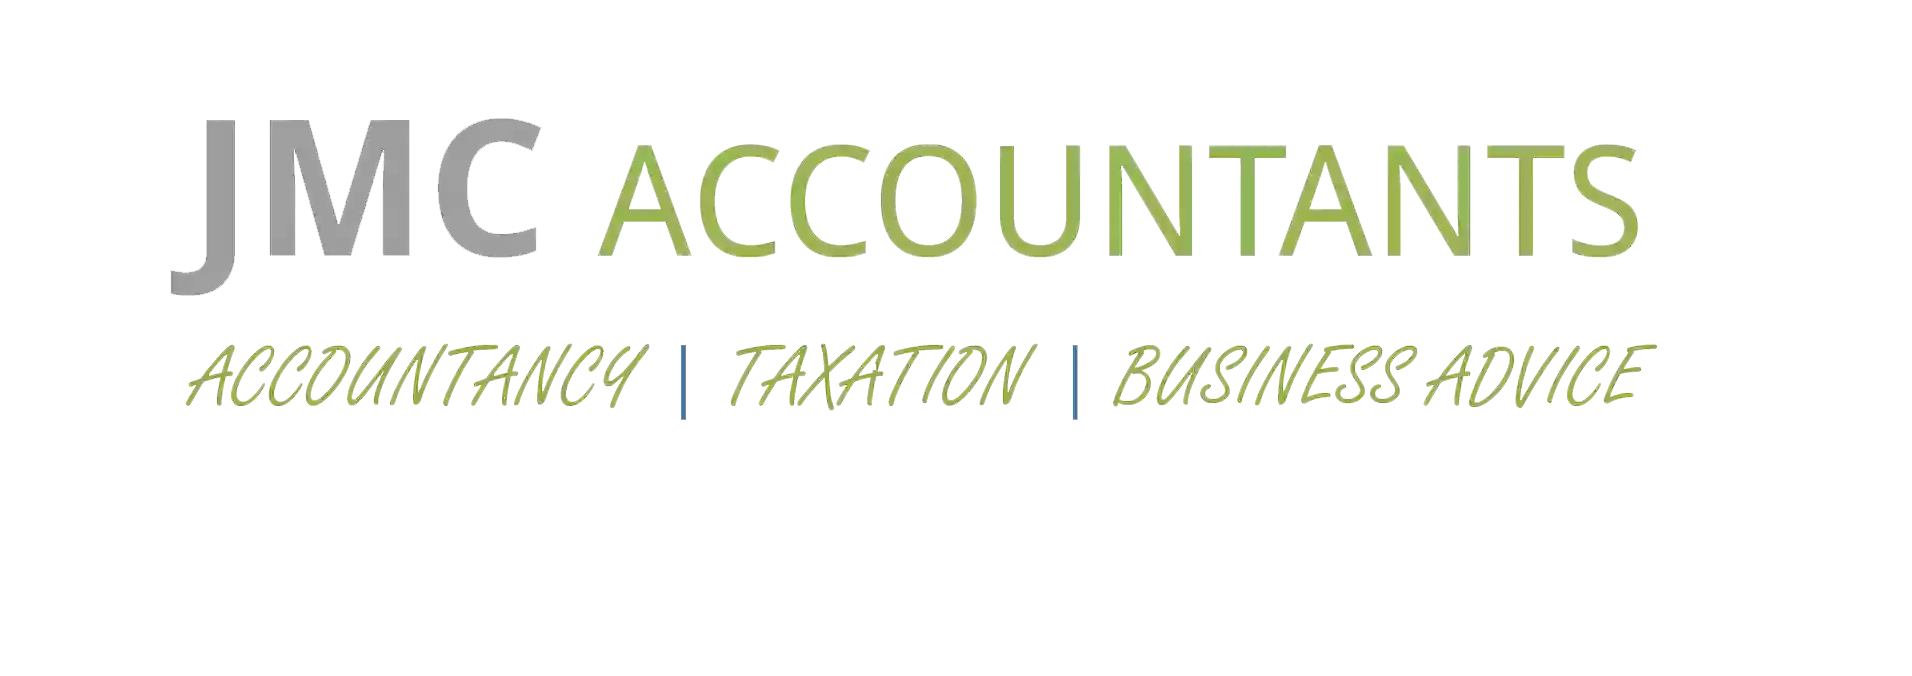 JMC Accountants & Tax Advisers Ltd